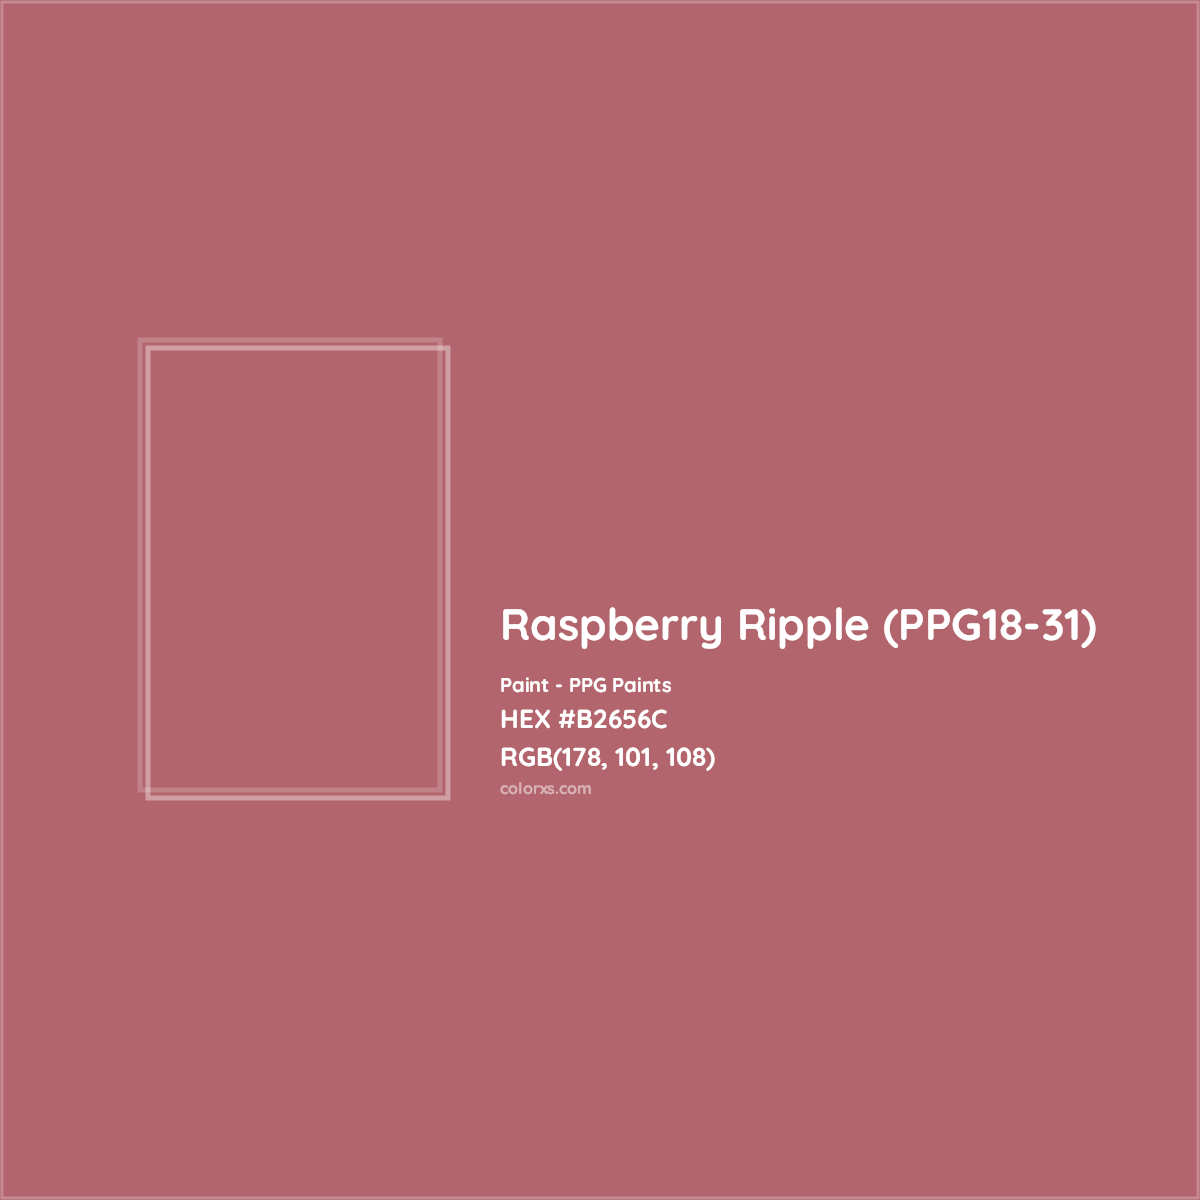 HEX #B2656C Raspberry Ripple (PPG18-31) Paint PPG Paints - Color Code